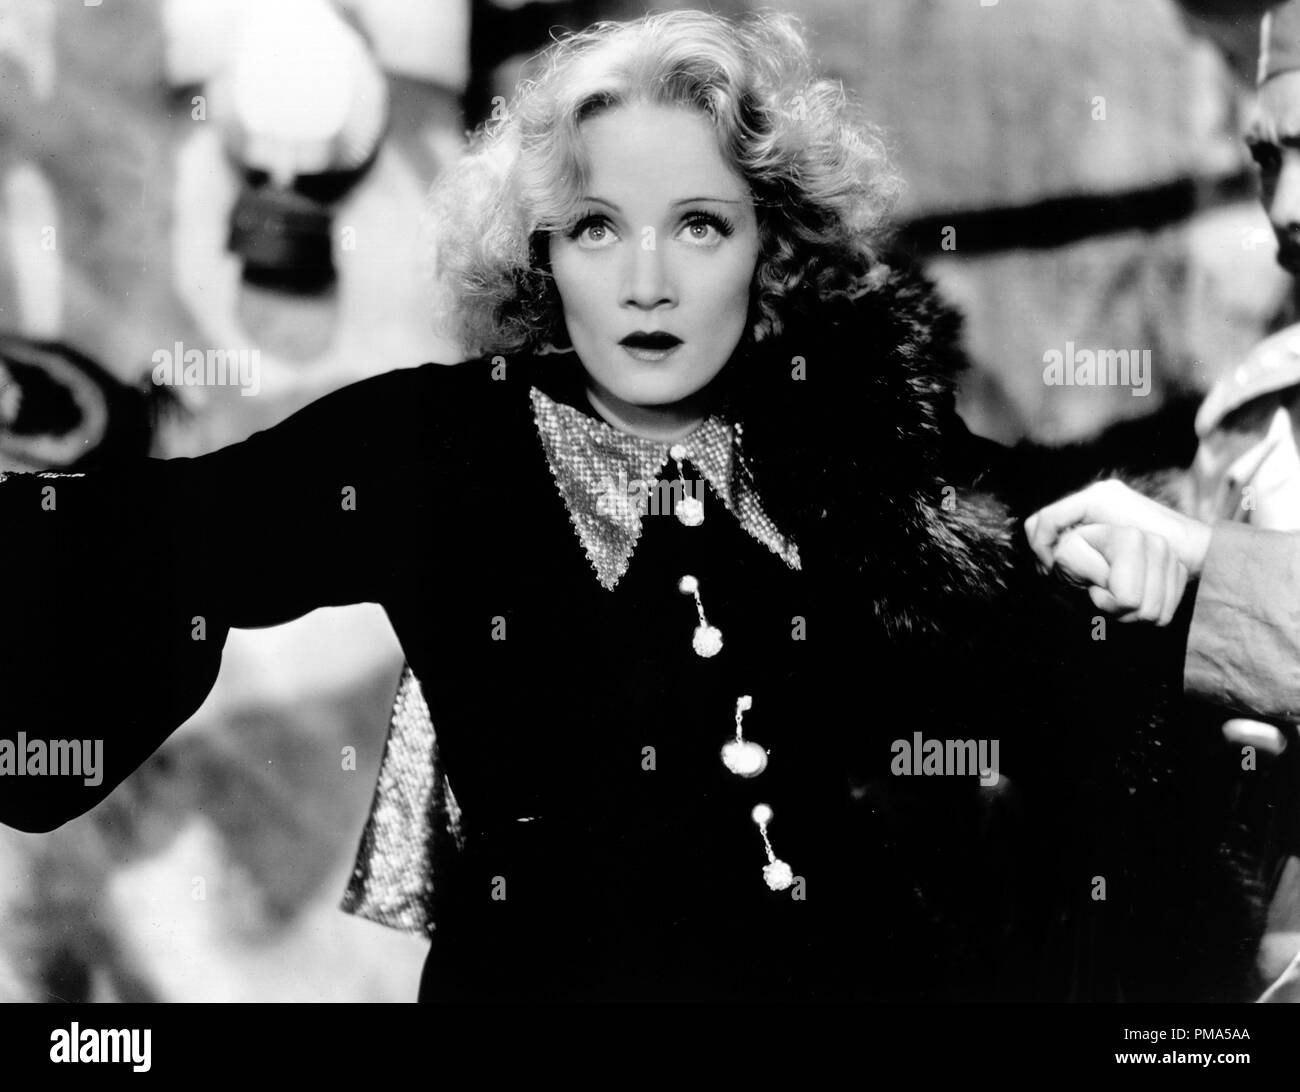 Publicité Studio : (Toujours classique du cinéma d'archives - Marlene Dietrich rétrospective) 'Shanghai Express' Marlene Dietrich 1932 une référence de dossier 32039 015THA Banque D'Images